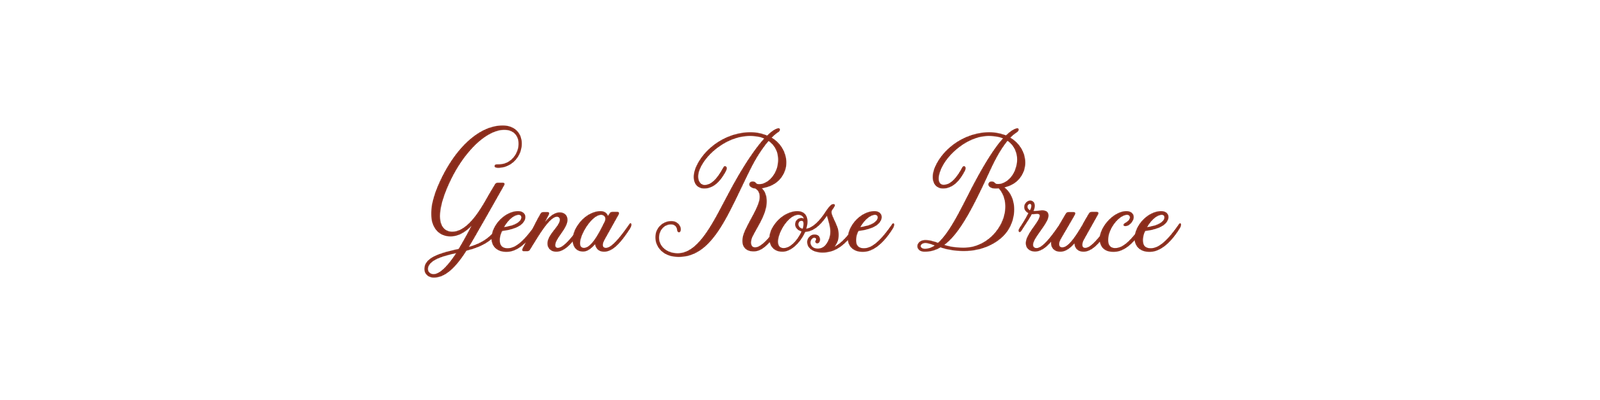 Gena Rose Bruce